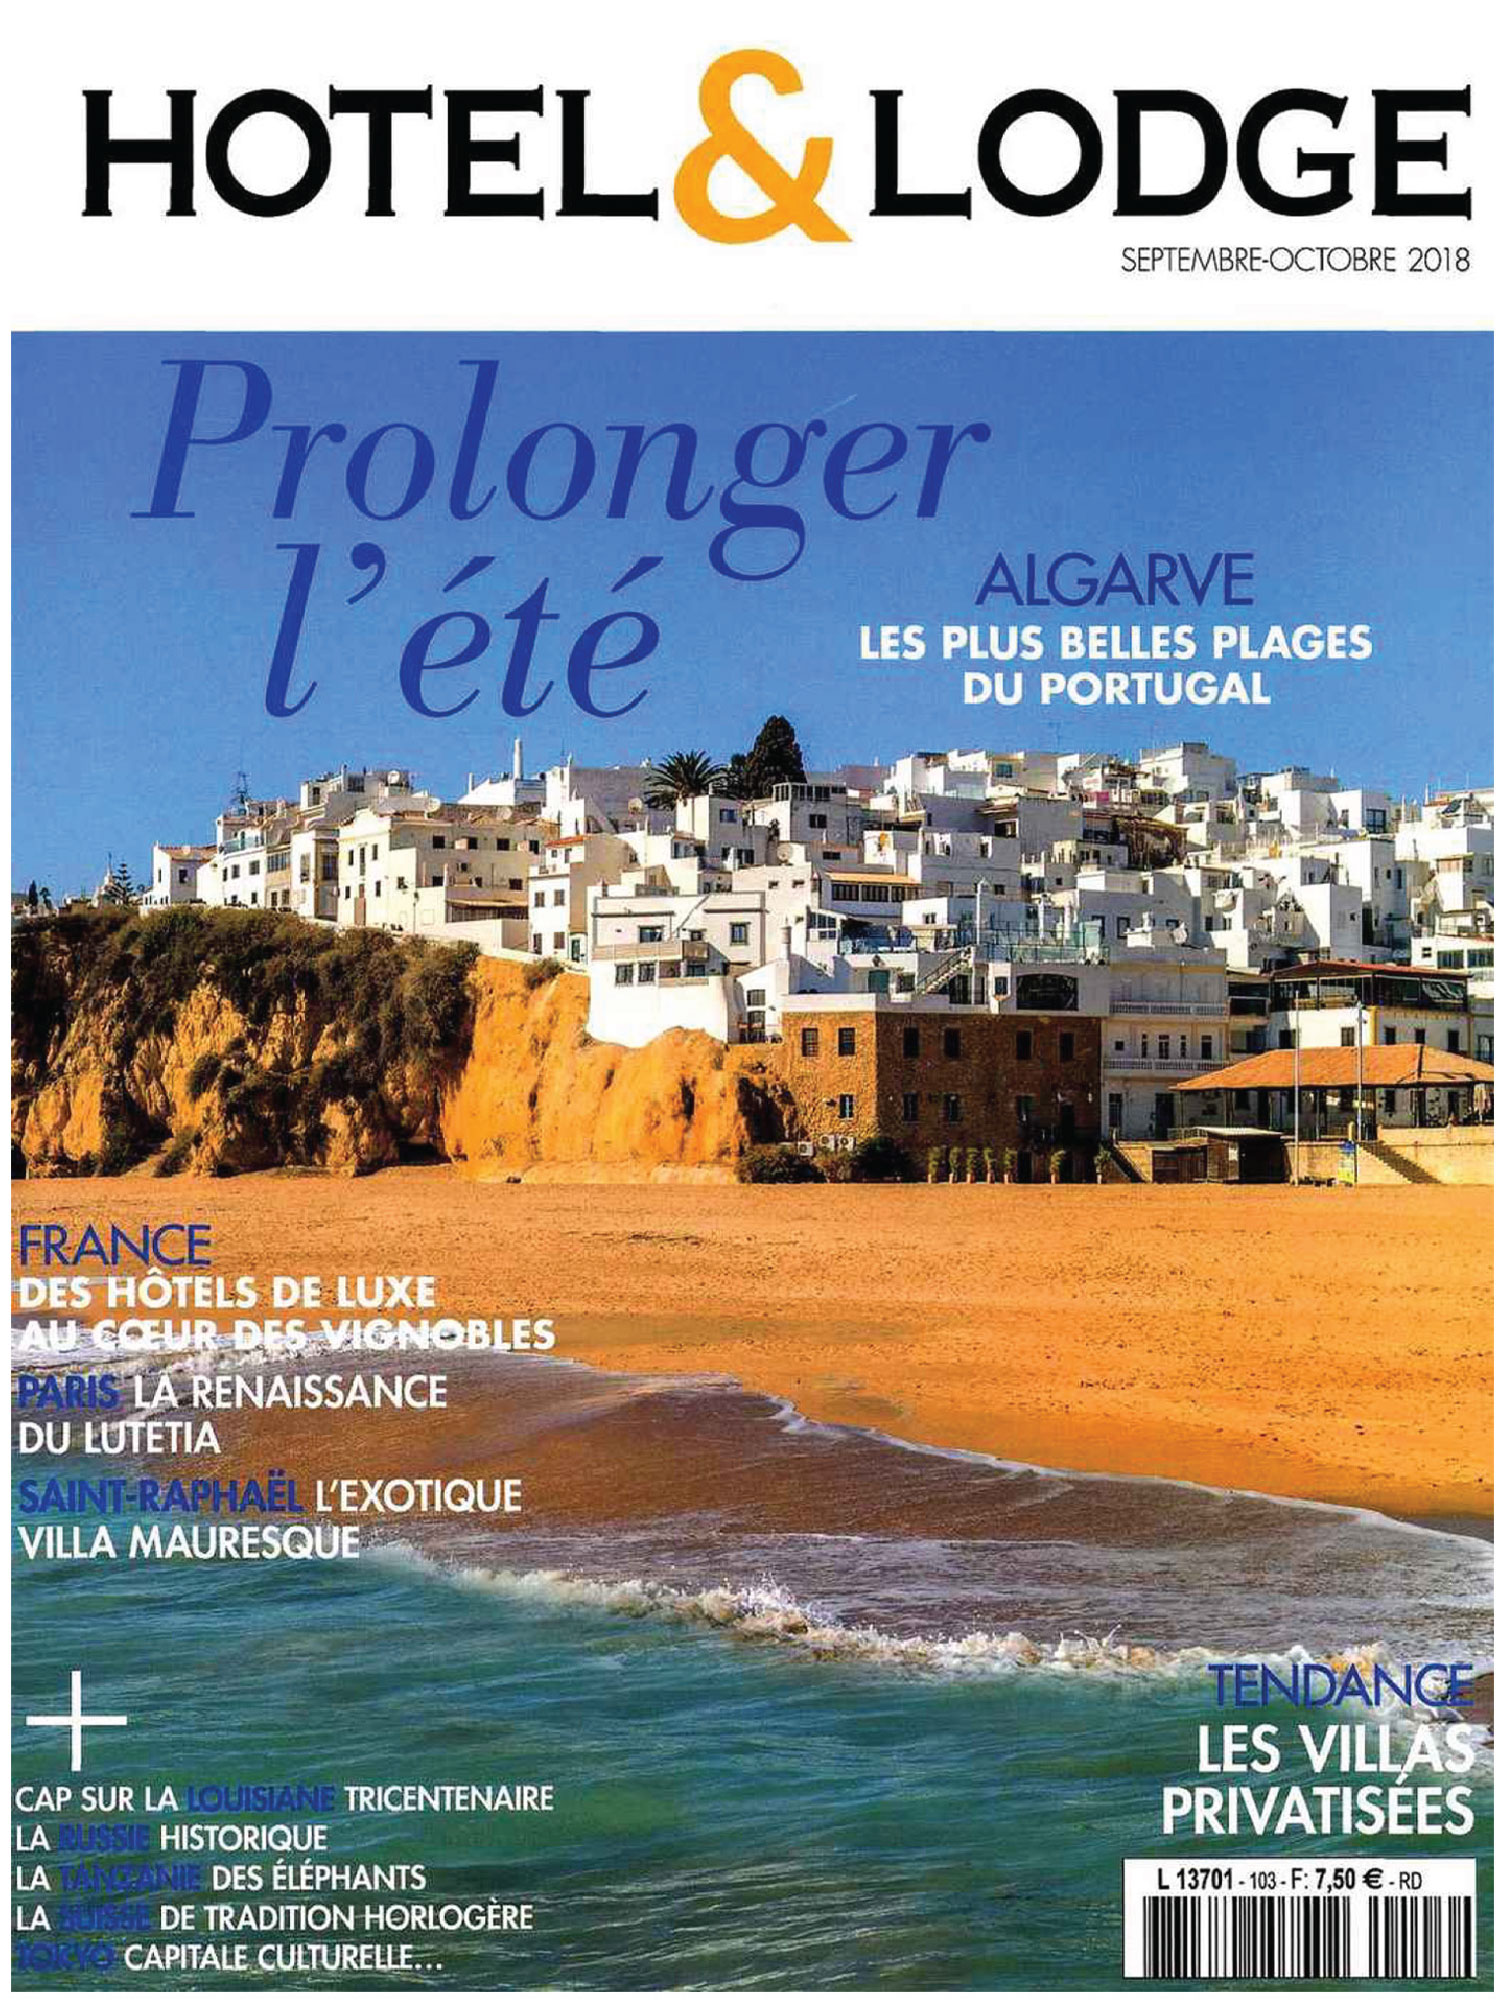 Hôtel & Lodge couverture du magazine septembre 2018